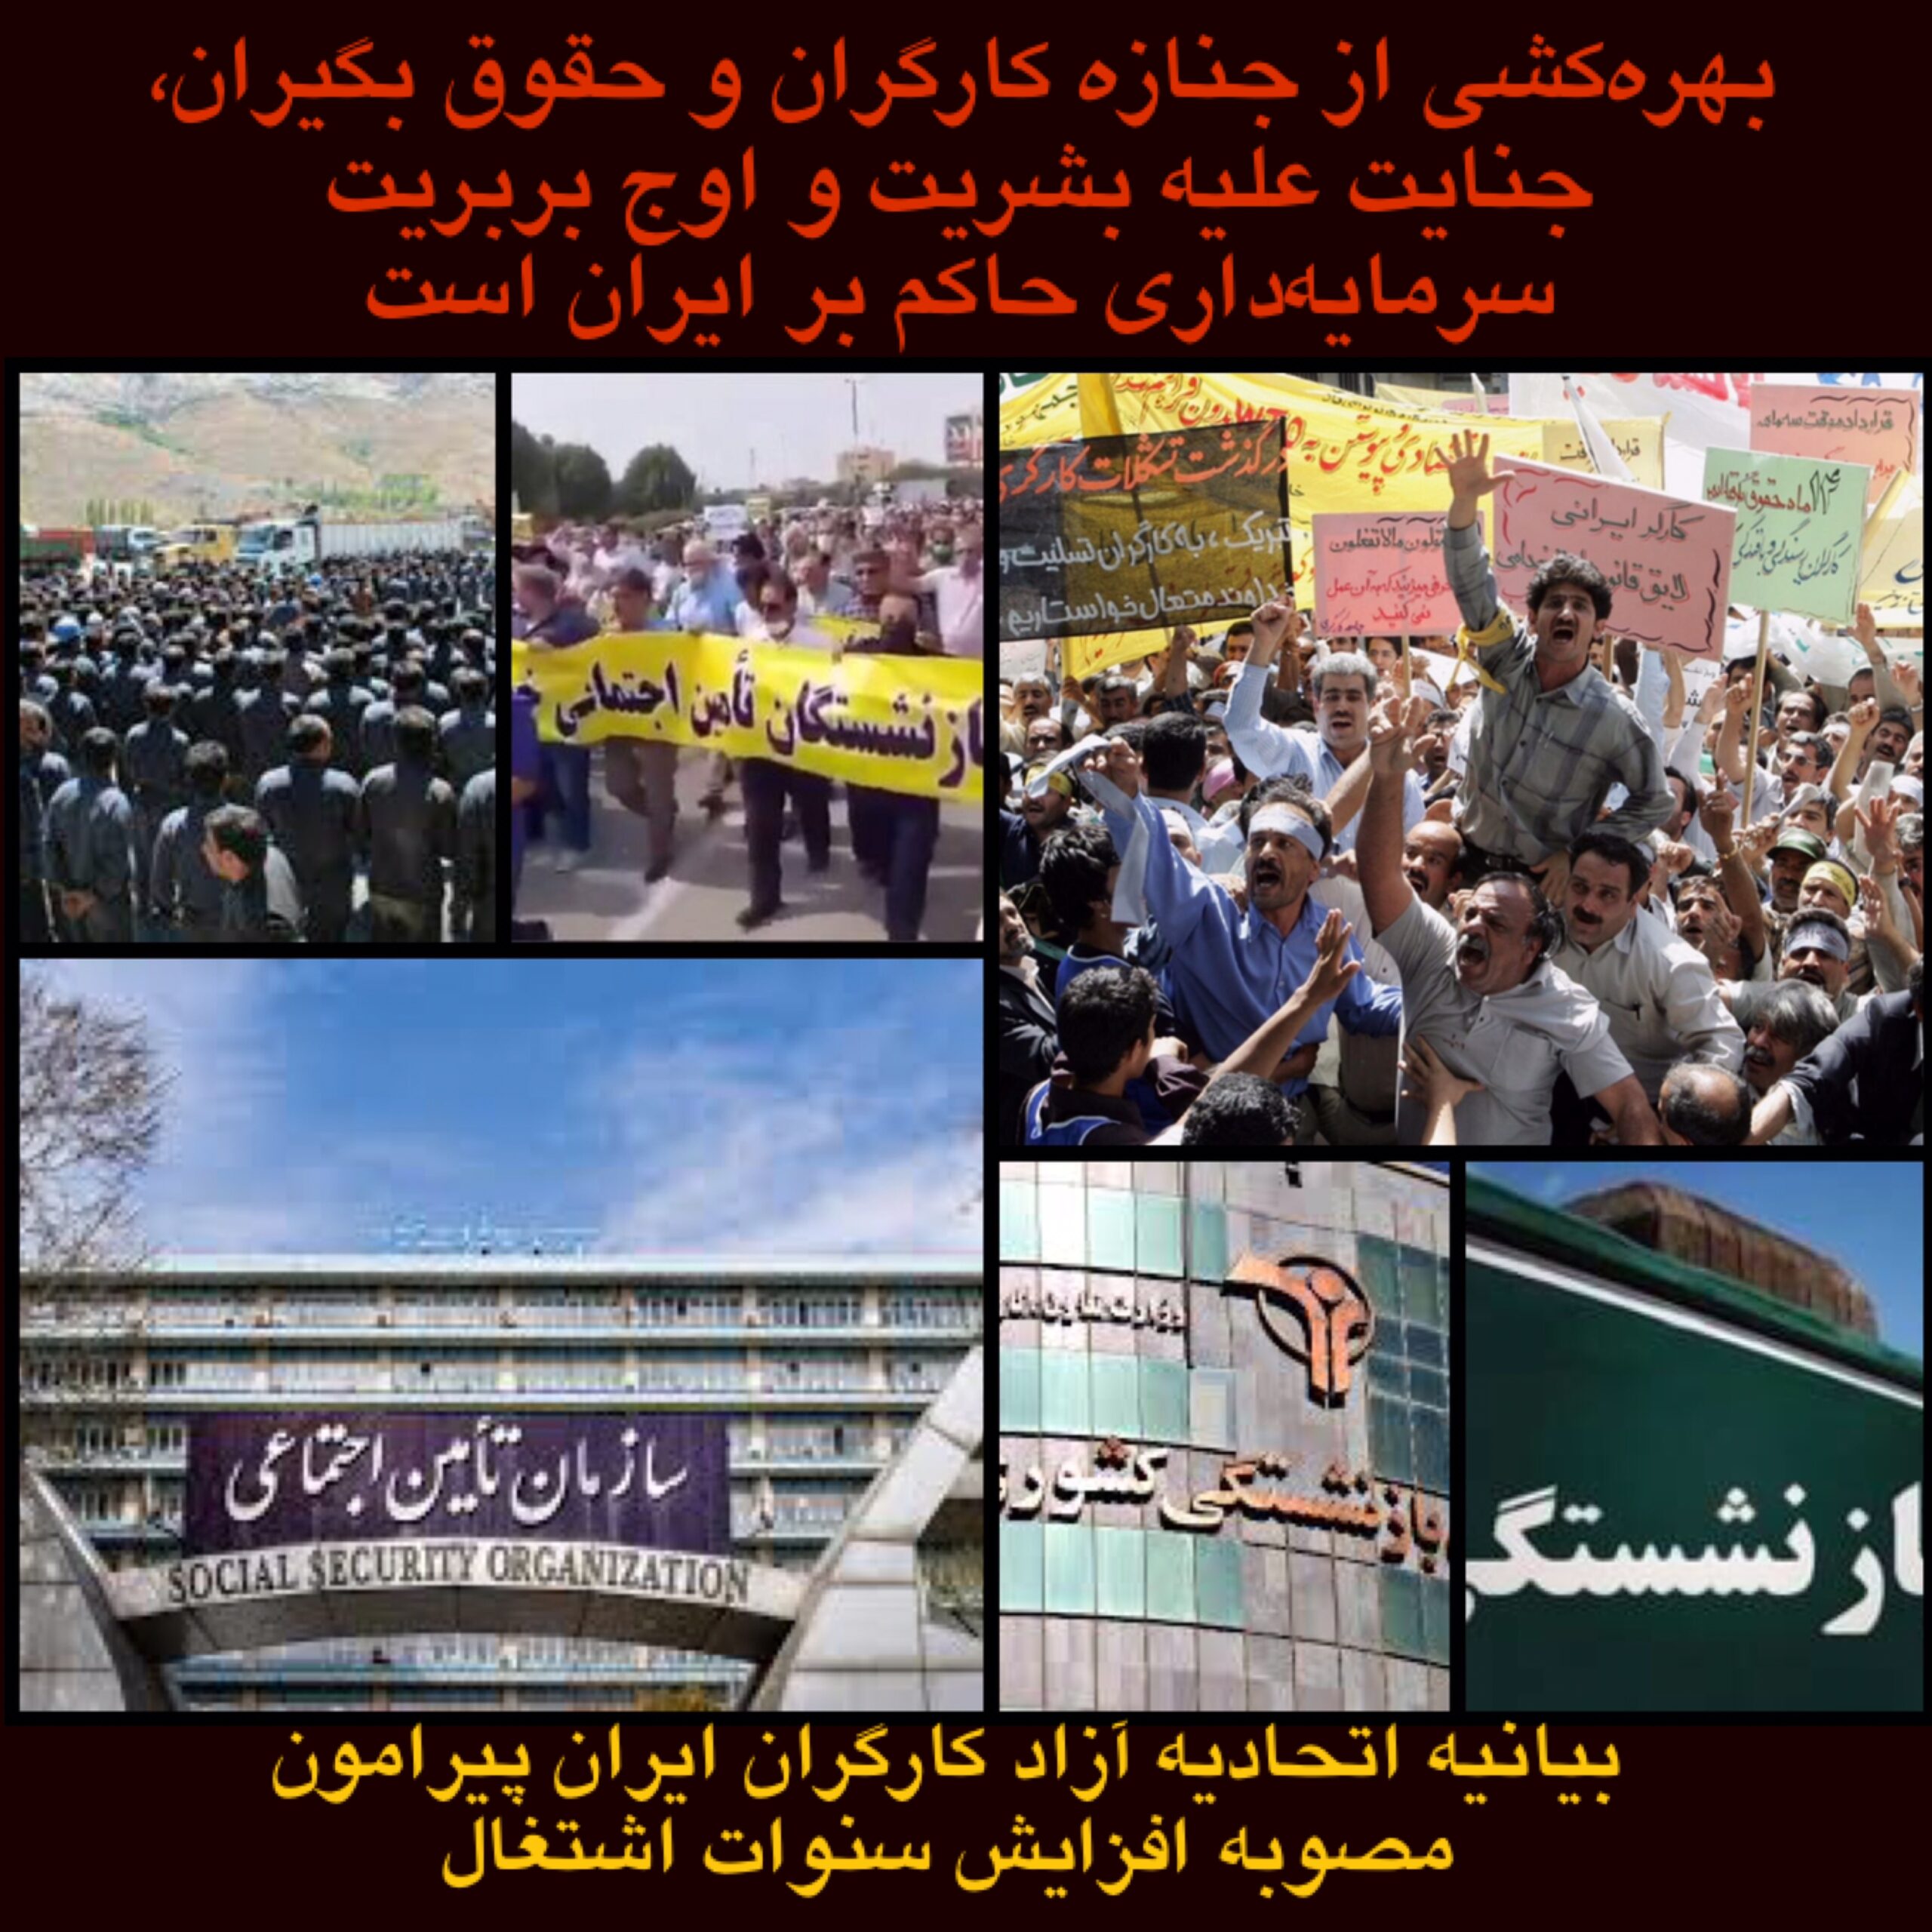 بیانیه اتحادیه آزاد کارگران ایران پیرامون مصوبه افزایش سنوات اشتغال